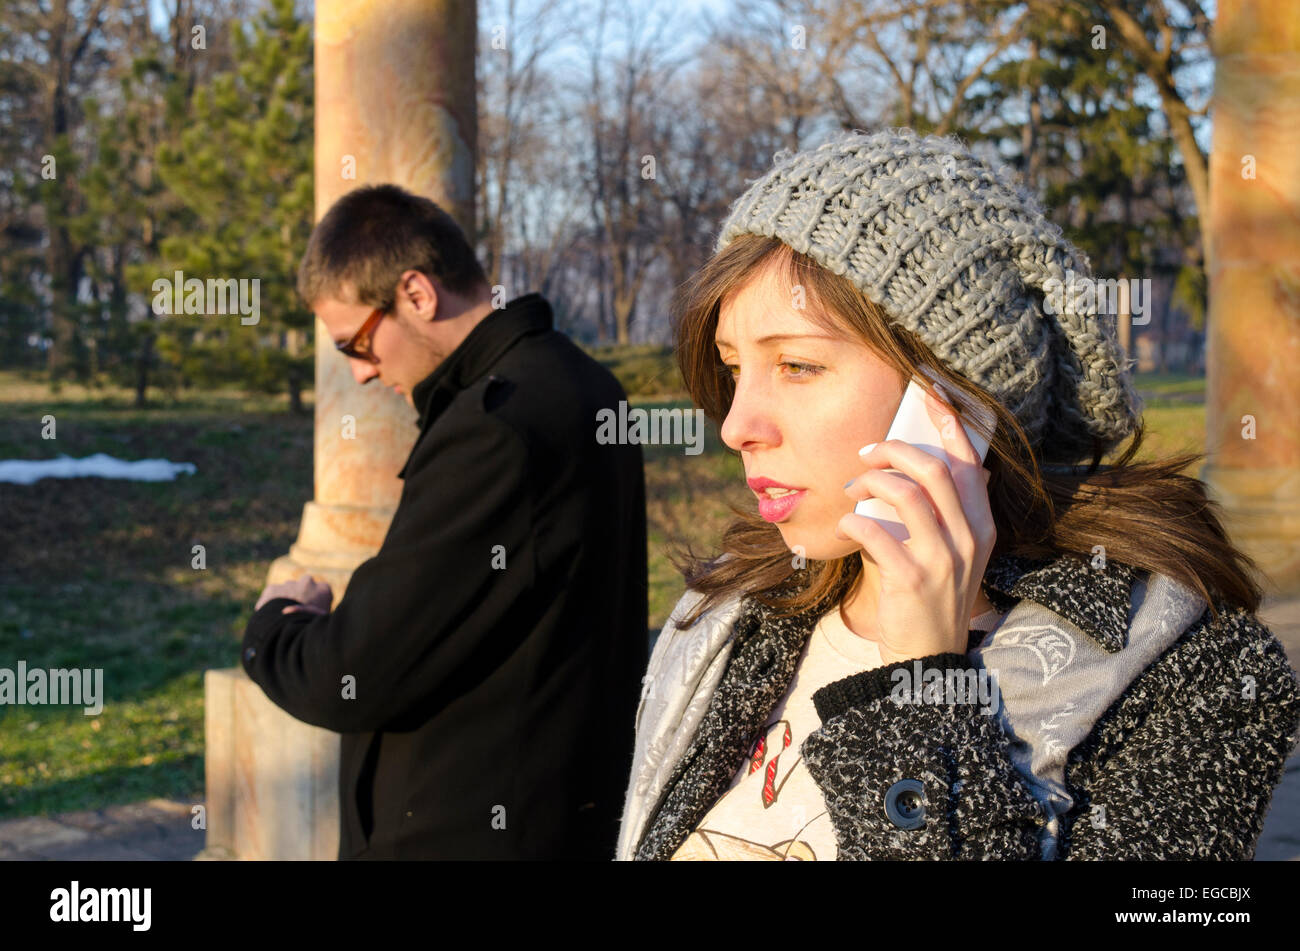 Mädchen am Telefon zu sprechen, während der junge in einem Park im freien wartet Stockfoto